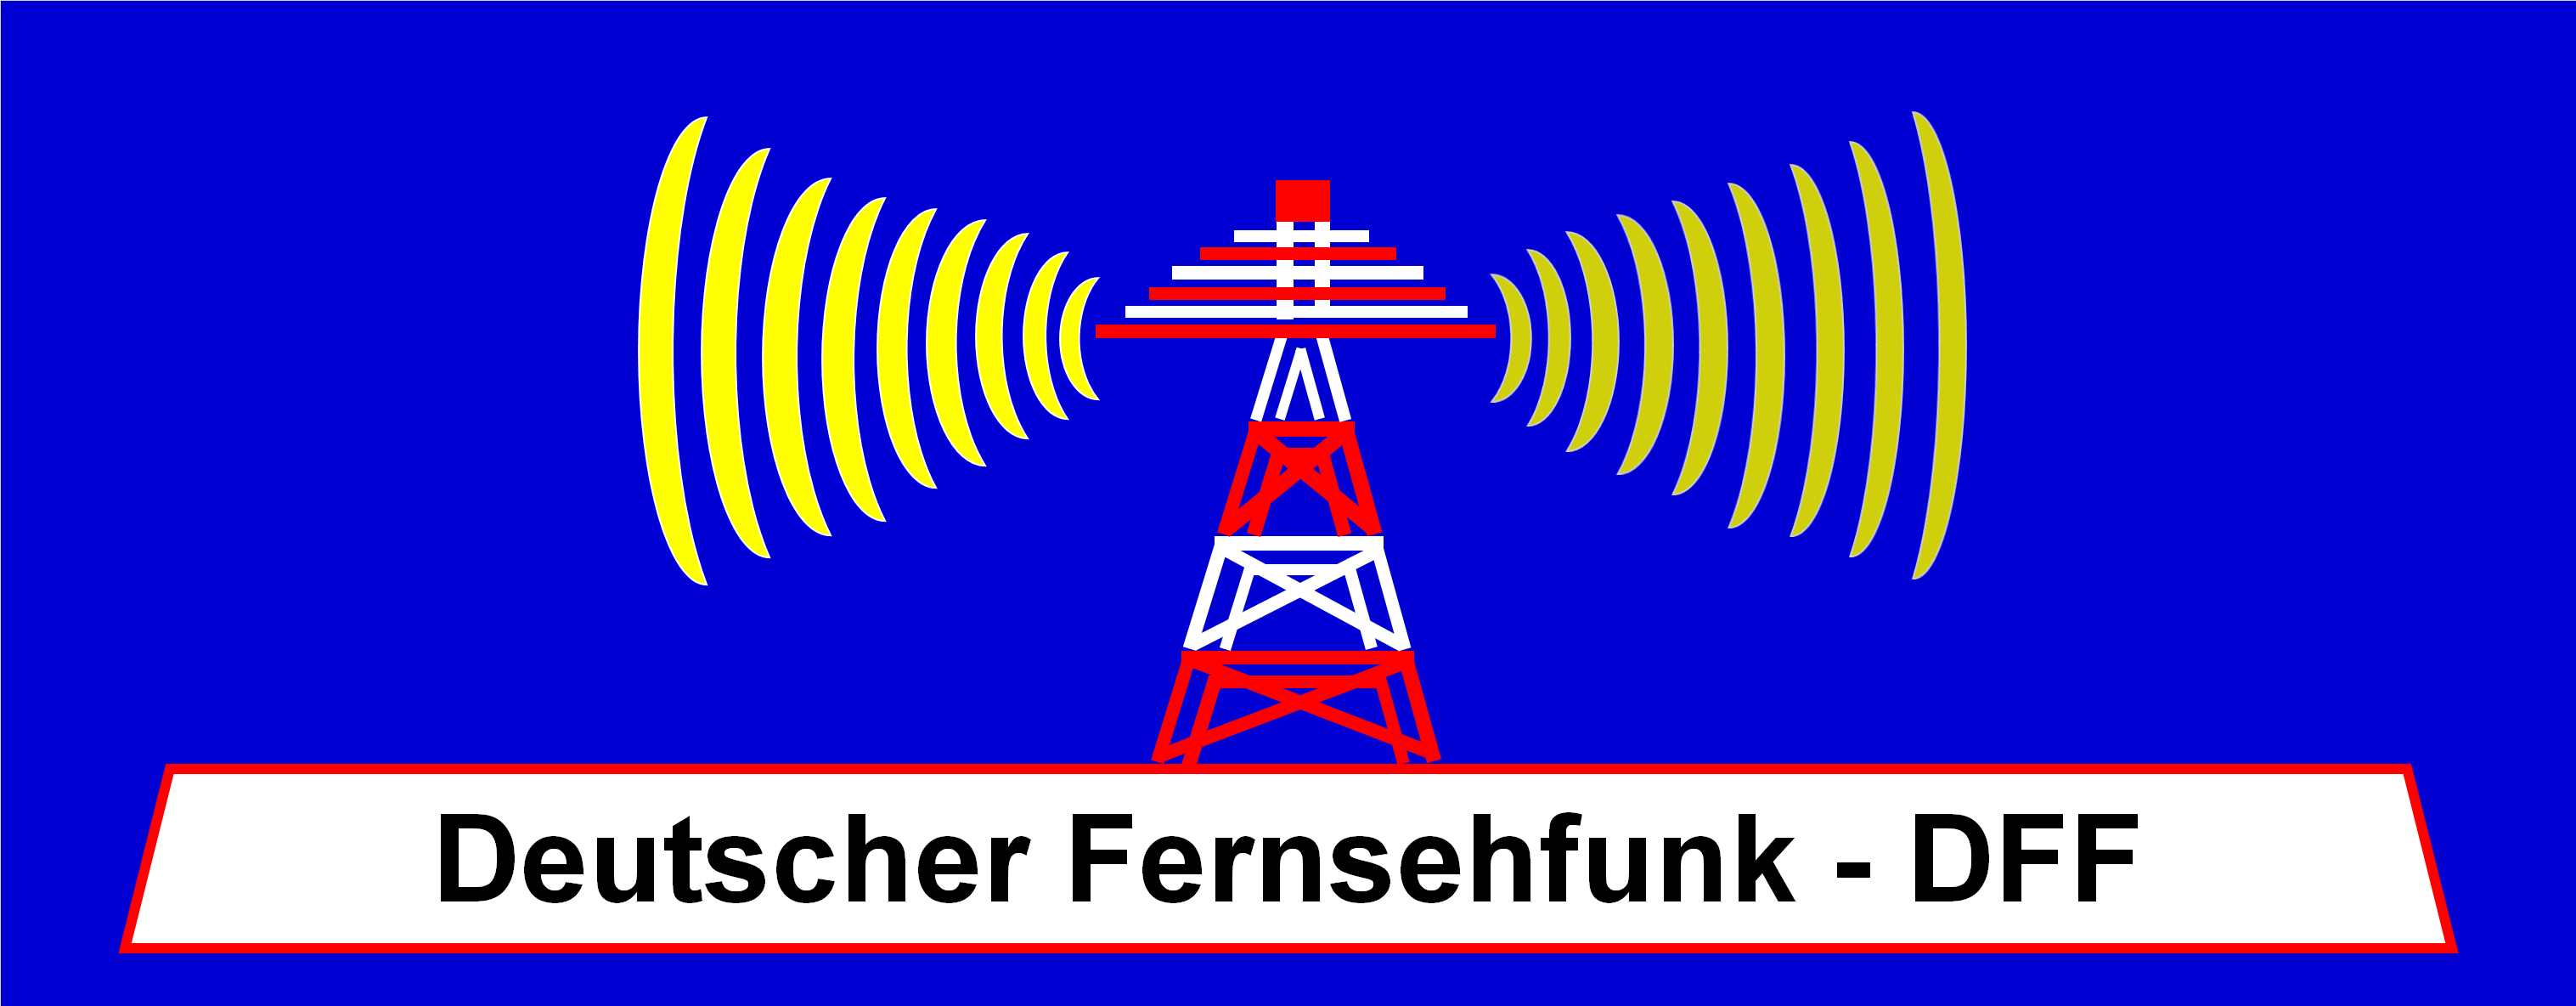 Deutscher Fernsehfunk - DFF